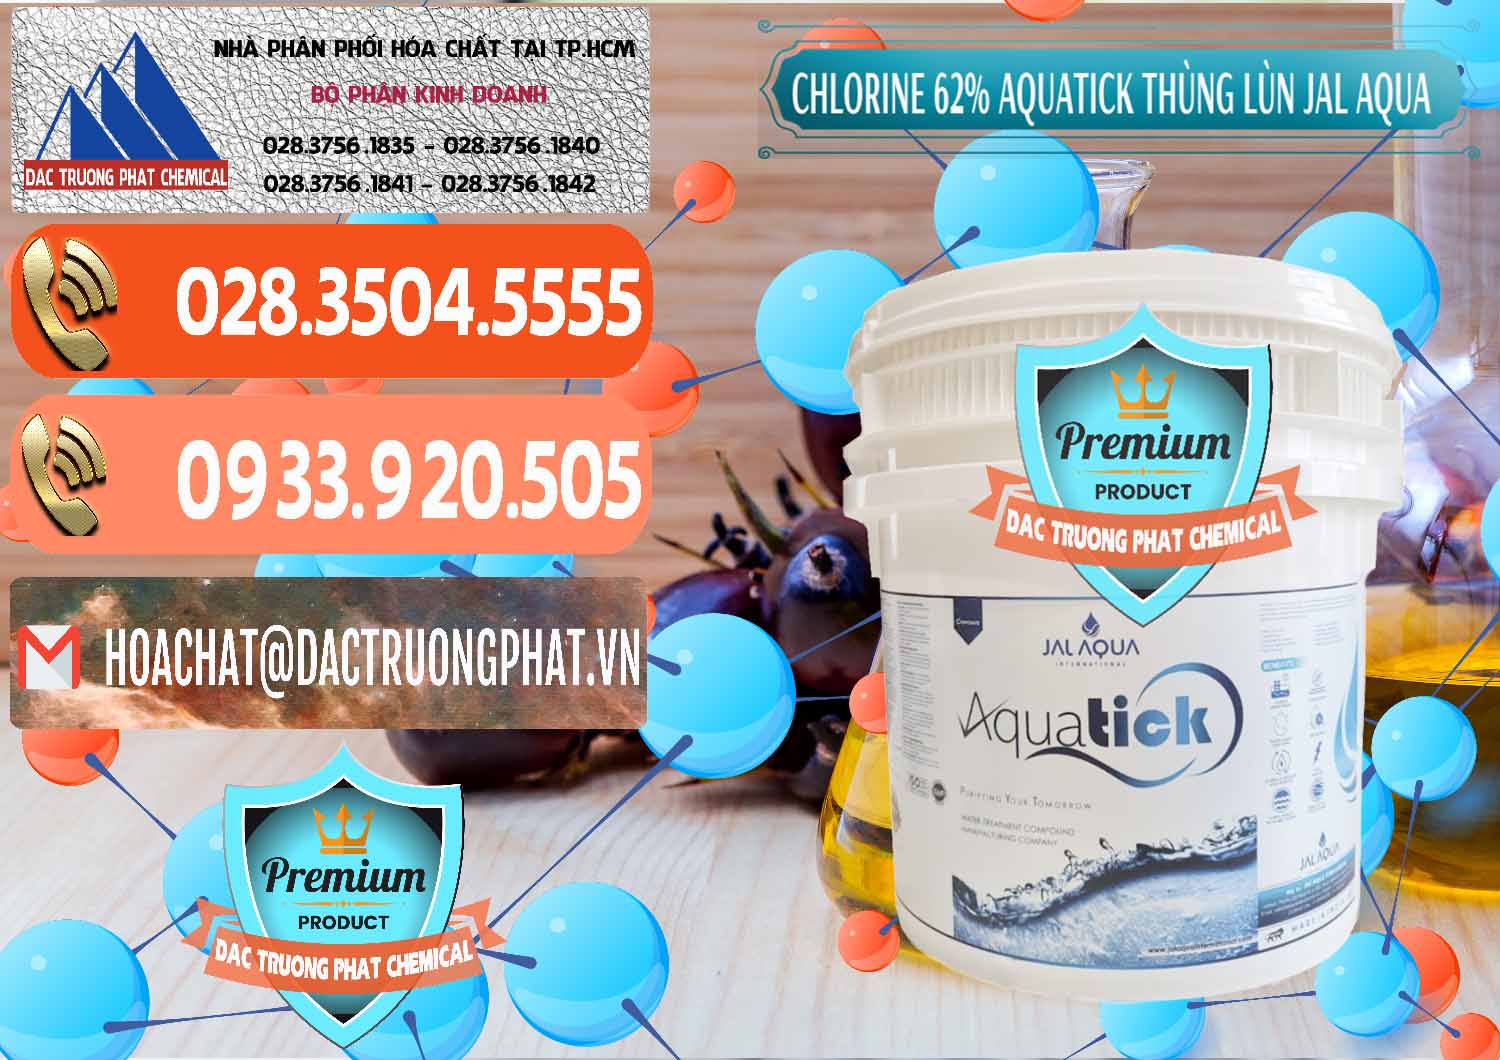 Nơi bán _ phân phối Chlorine – Clorin 62% Aquatick Thùng Lùn Jal Aqua Ấn Độ India - 0238 - Công ty chuyên bán - cung cấp hóa chất tại TP.HCM - hoachatmientay.com